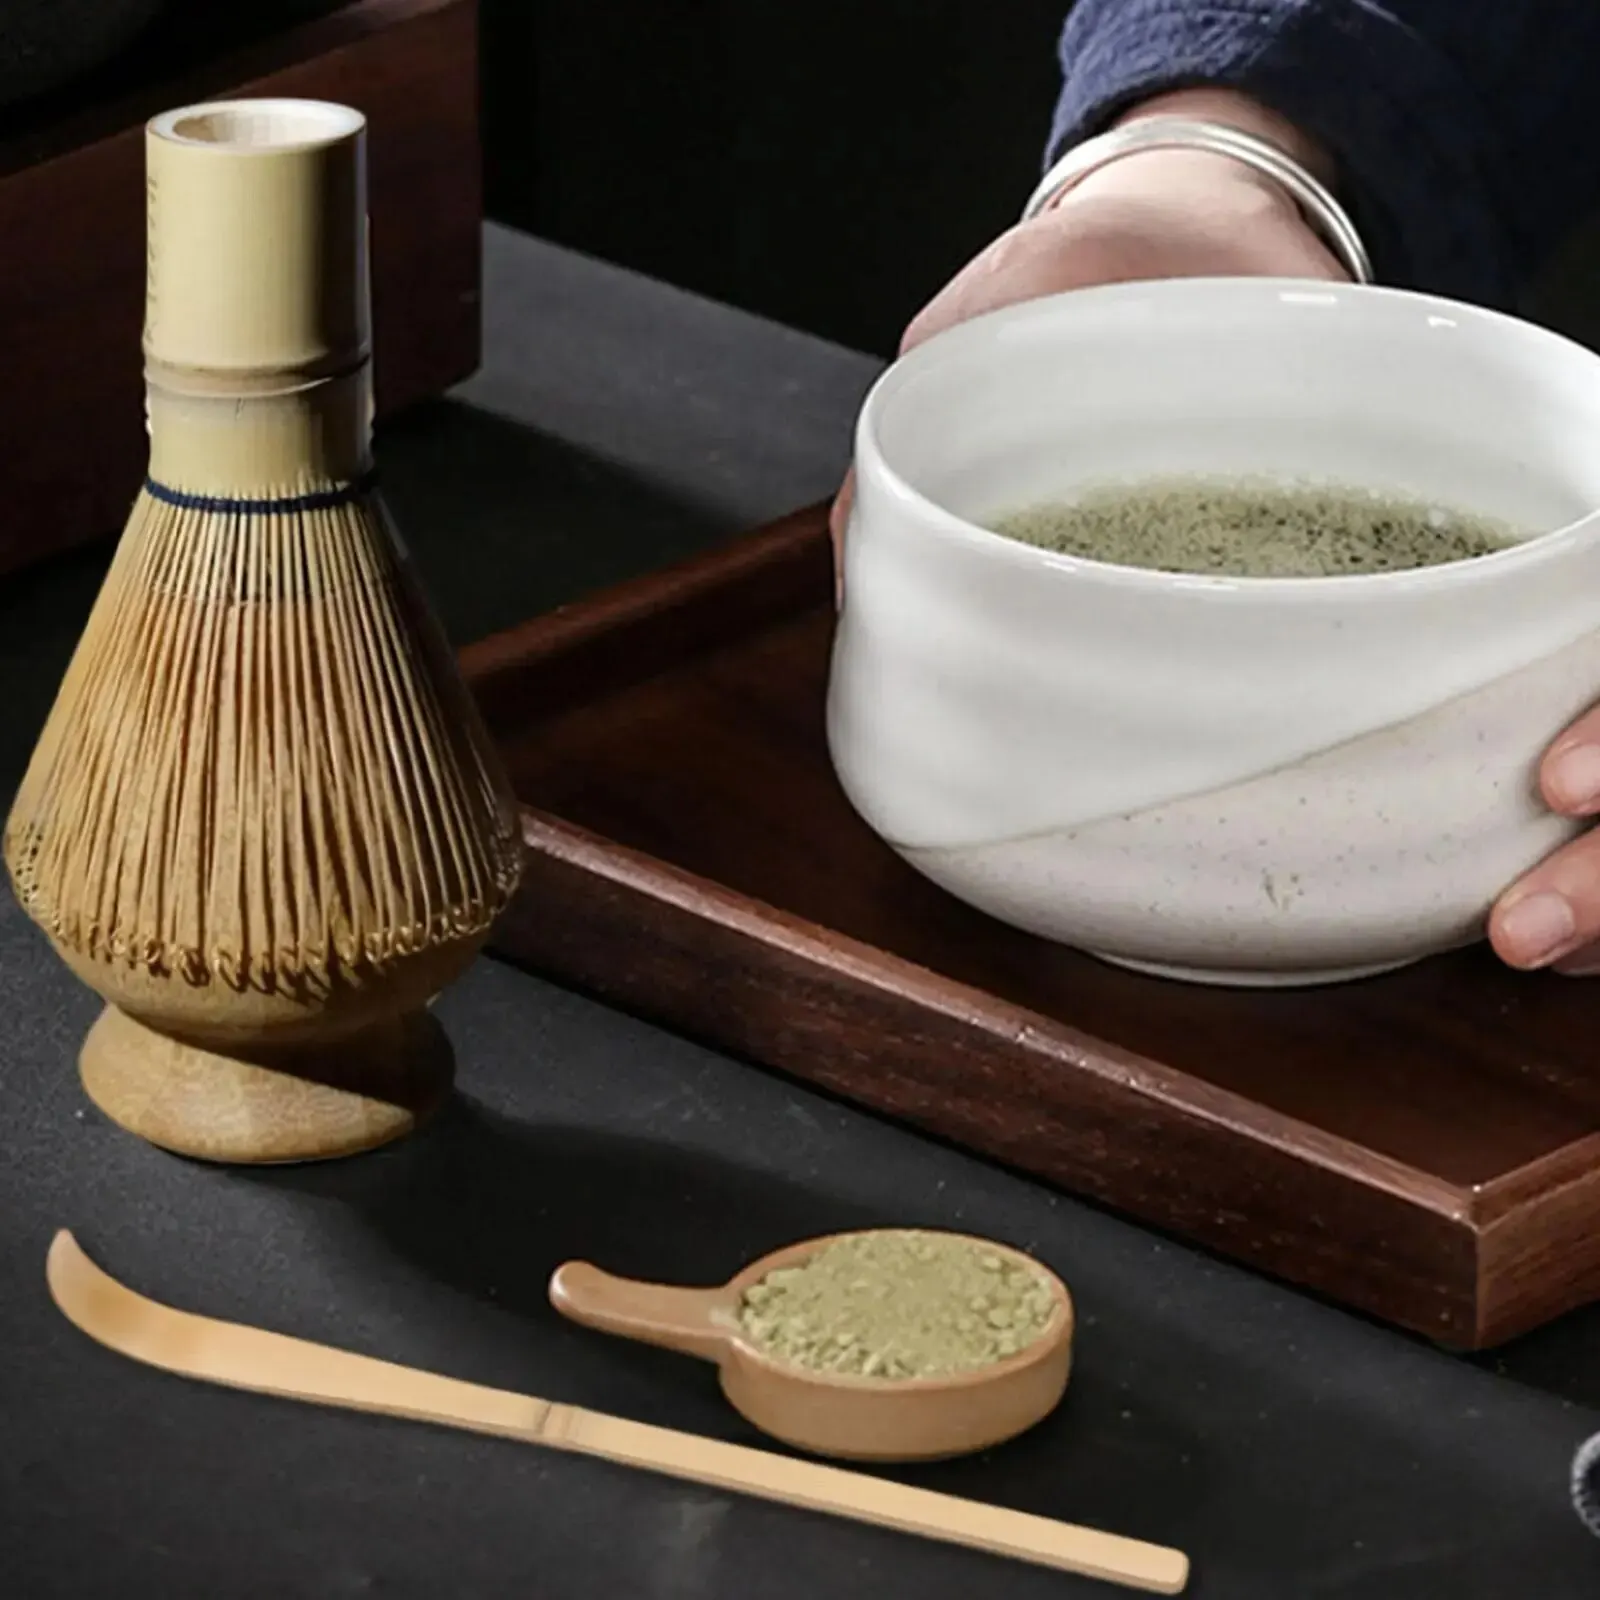 Kit complet de bol de thé vert matcha traditionnel avec cuillère à